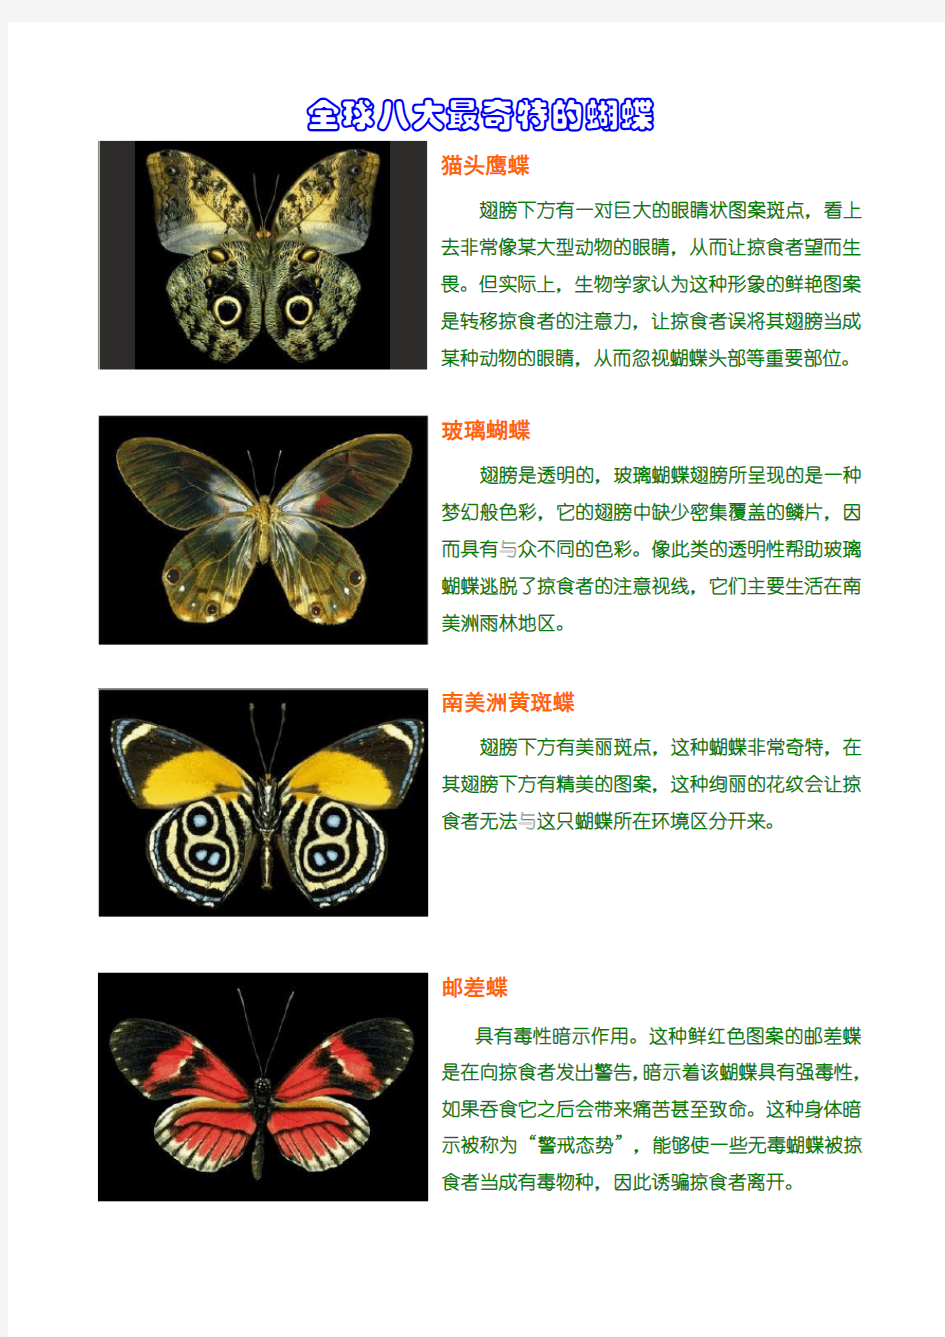 蝴蝶图片及介绍